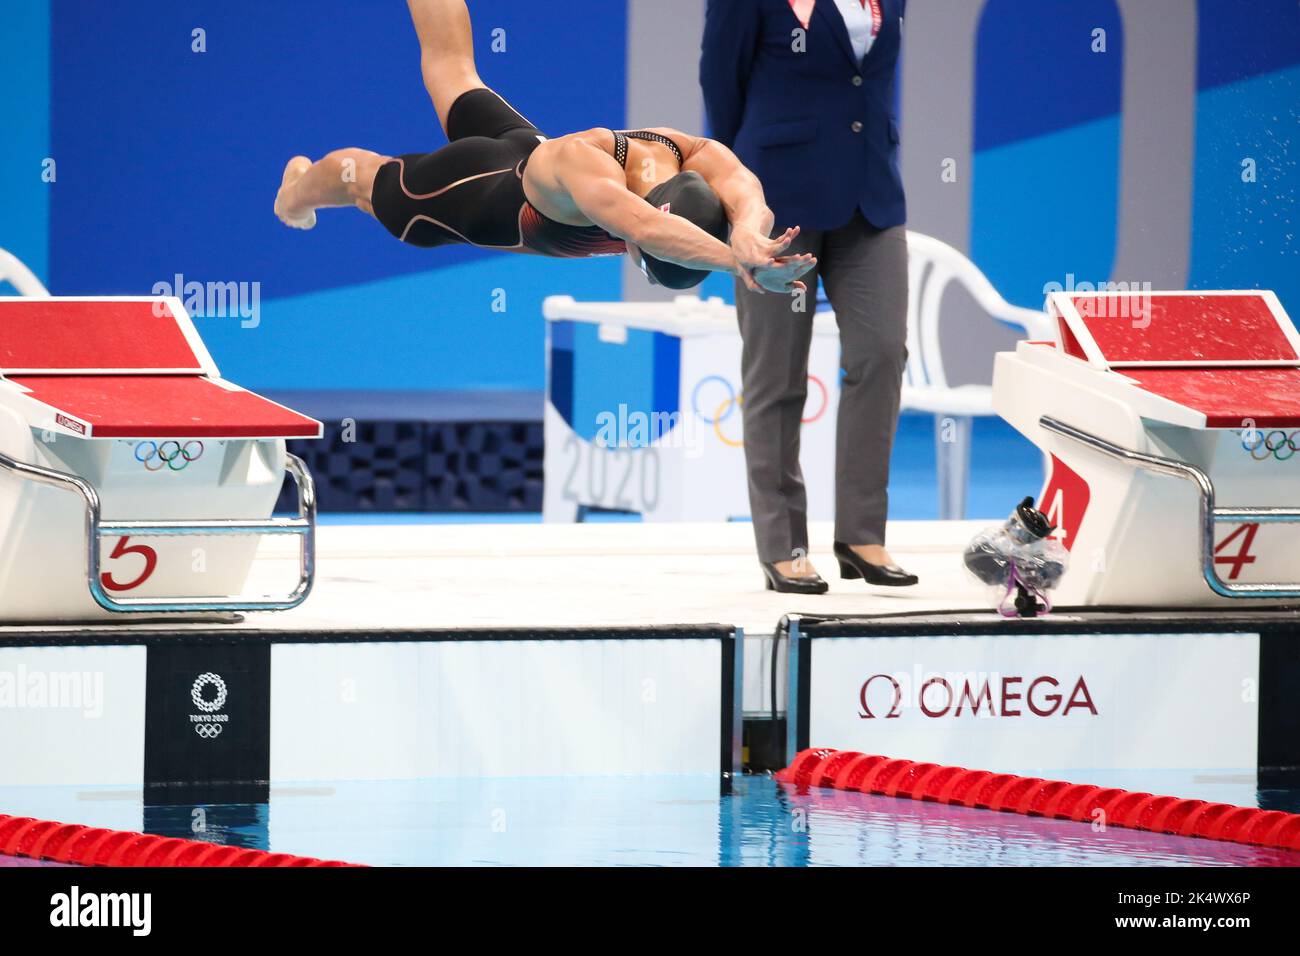 1st AGOSTO 2021 - TOKYO, GIAPPONE: Pernille BLUME di Danimarca in azione durante la finale di Freestyle 50m delle Donne in piscina ai Giochi Olimpici di Tokyo 2020 (Foto: Mickael Chavet/RX) Foto Stock